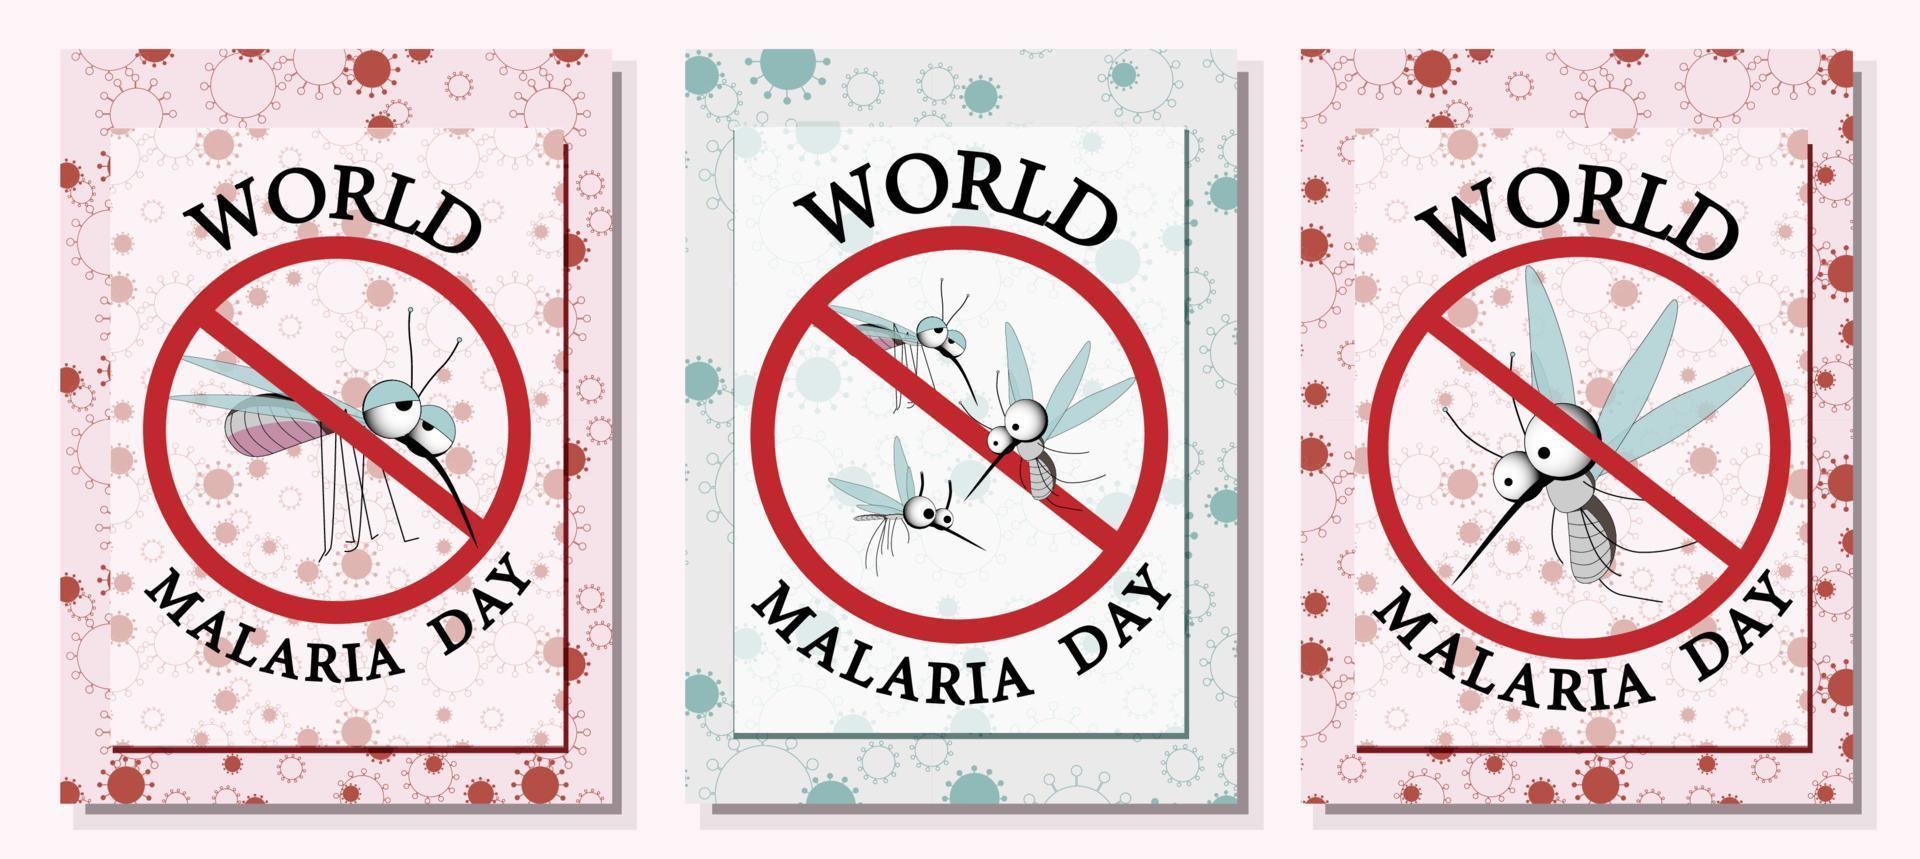 mundo malária dia vetor, ilustração do malária, e a mundo para Projeto mundo malária dia.vetor bandeira e poster Projeto. vetor